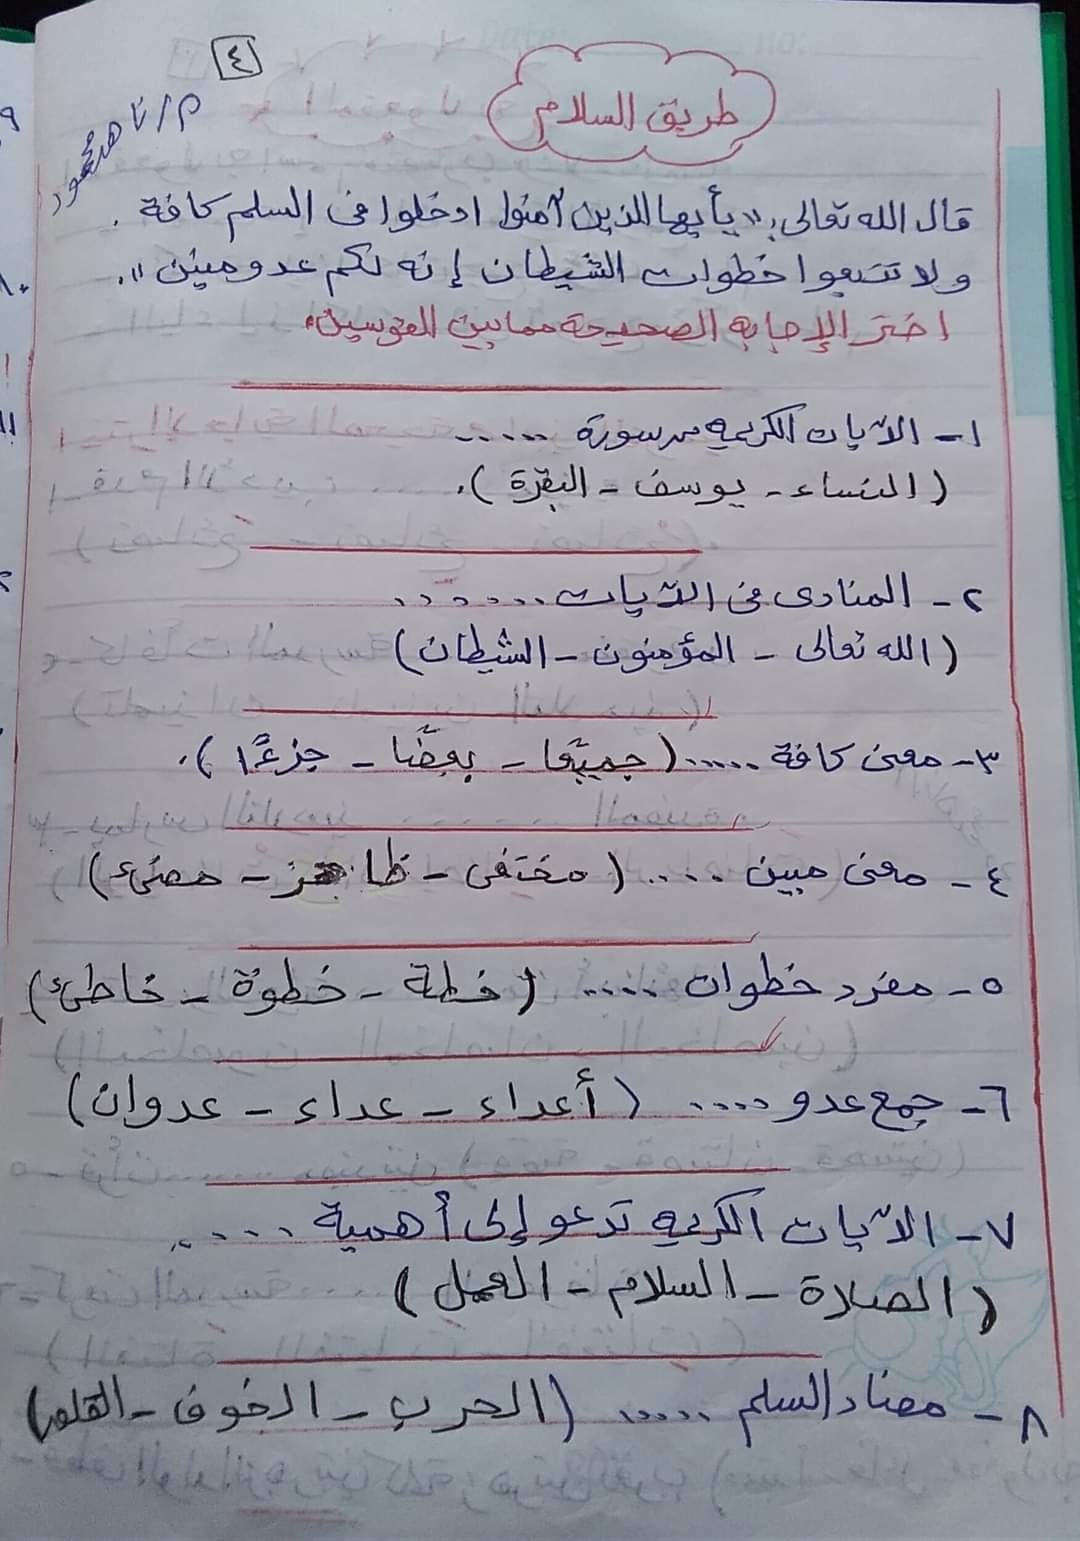  مراجعة منهج شهر مارس  لغة عربية (اختيار من متعدد) بالاجابات للصف الخامس الابتدائى الترم الثانى 2021 4